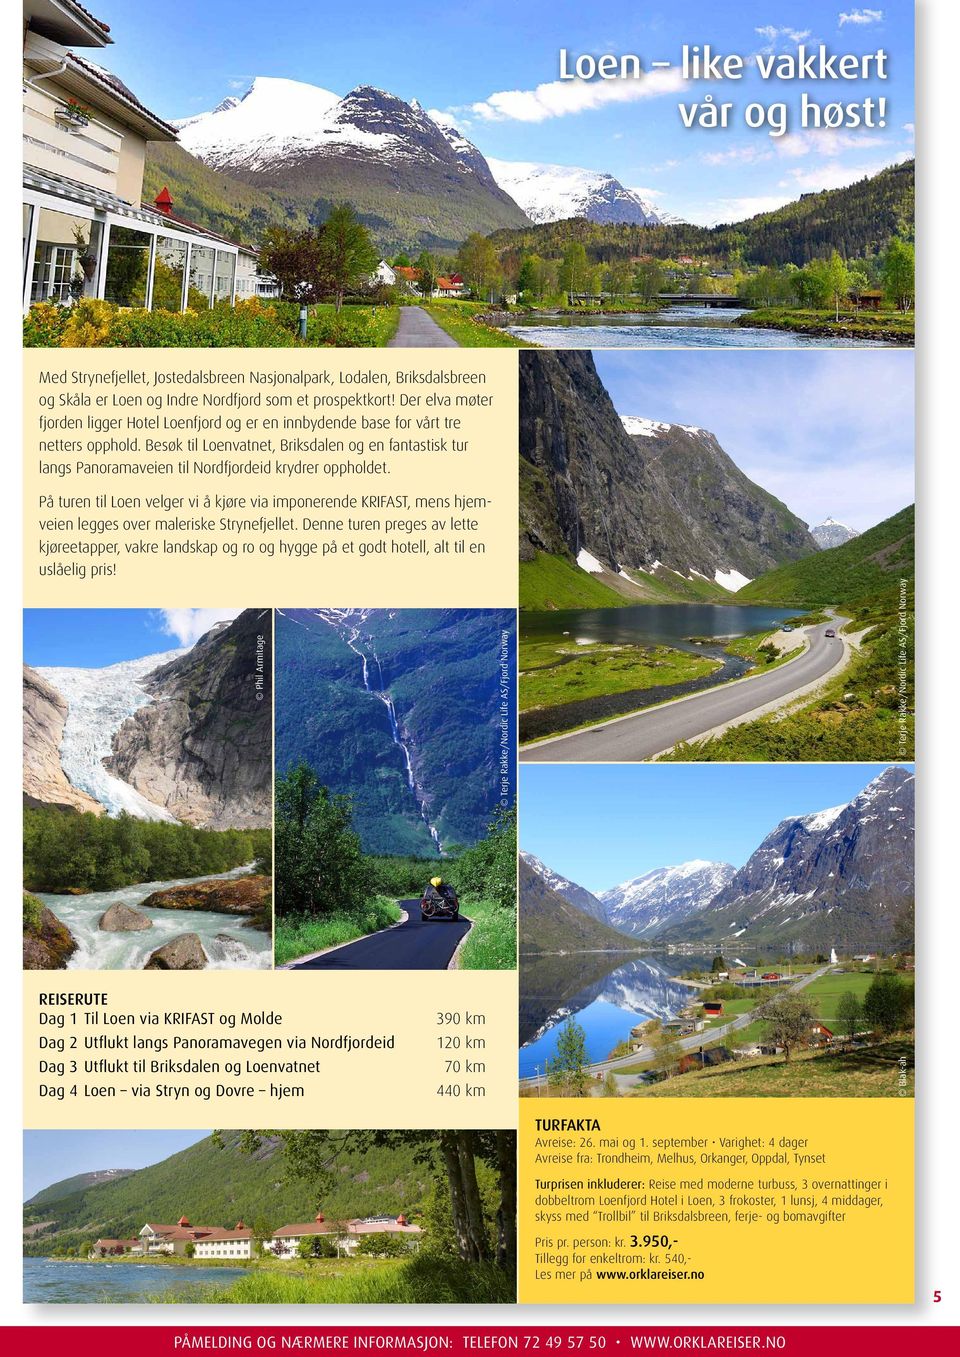 Besøk til Loenvatnet, Briksdalen og en fantastisk tur langs Panoramaveien til Nordfjordeid krydrer oppholdet.